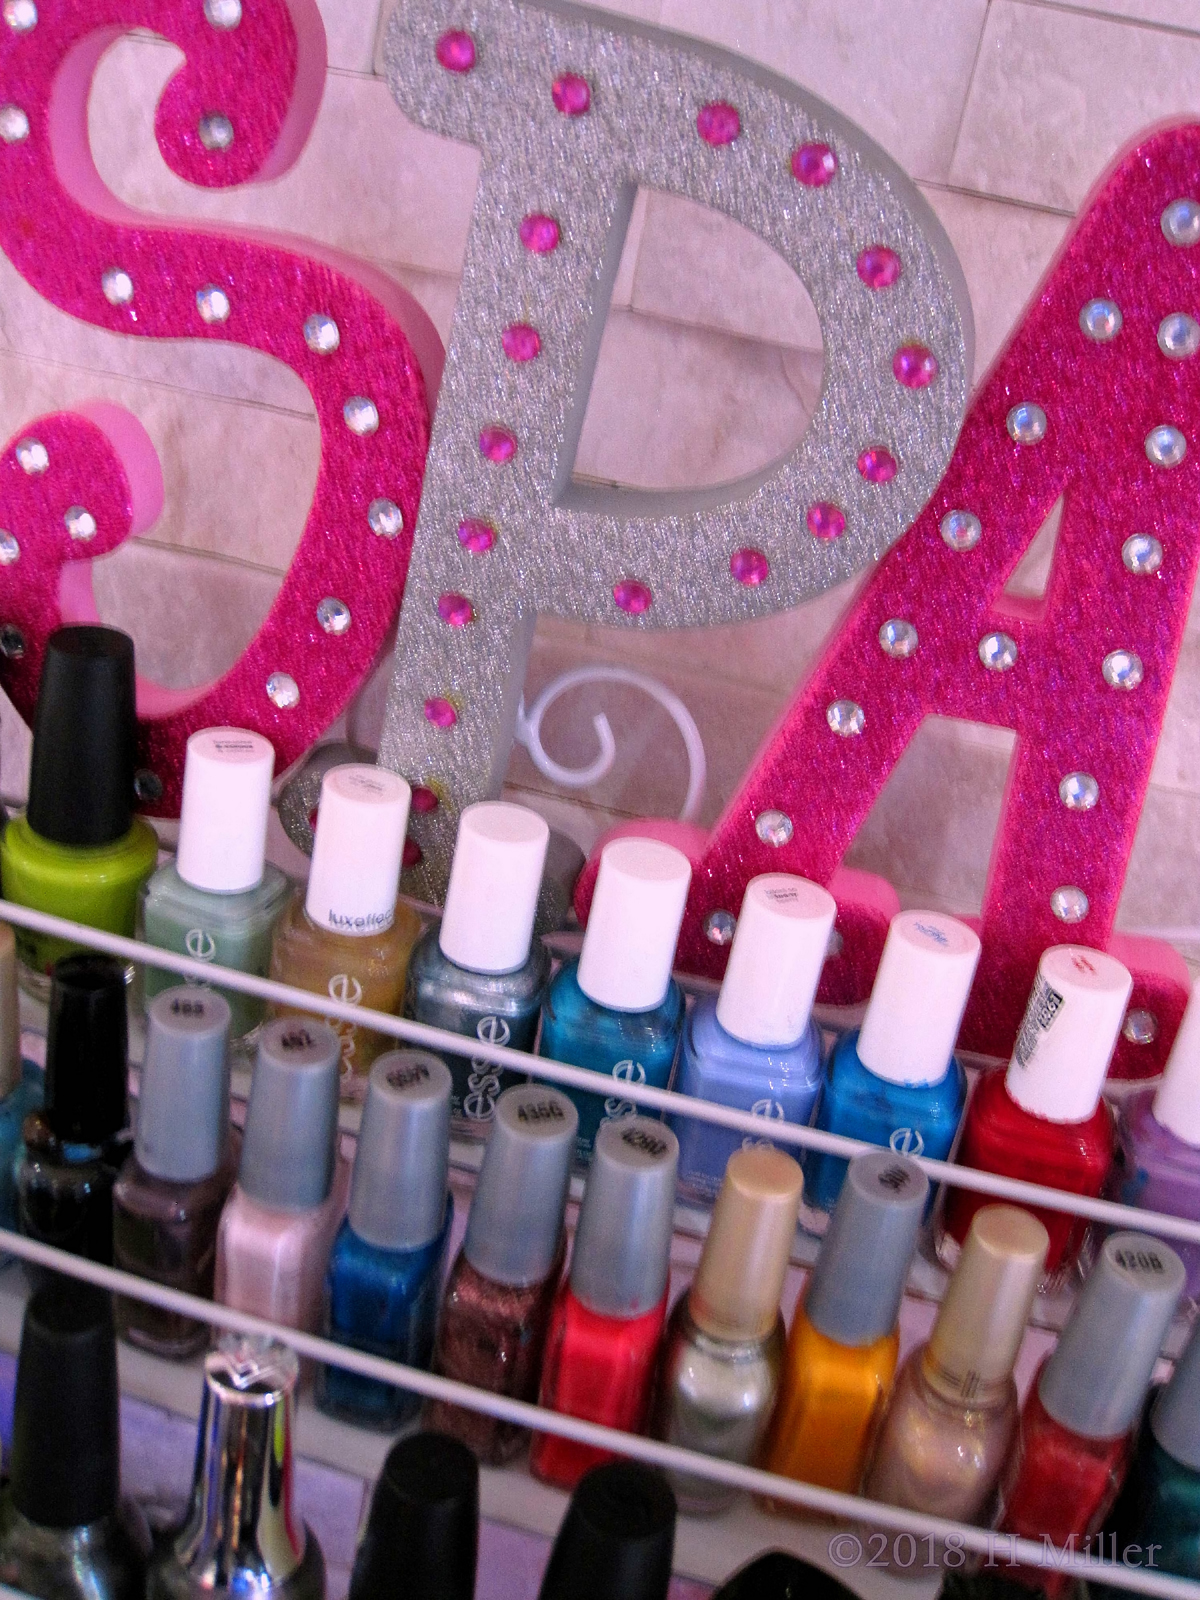 A Closeup Of The Various Shades Of Nail Polish At The Kids Nail Salon. 